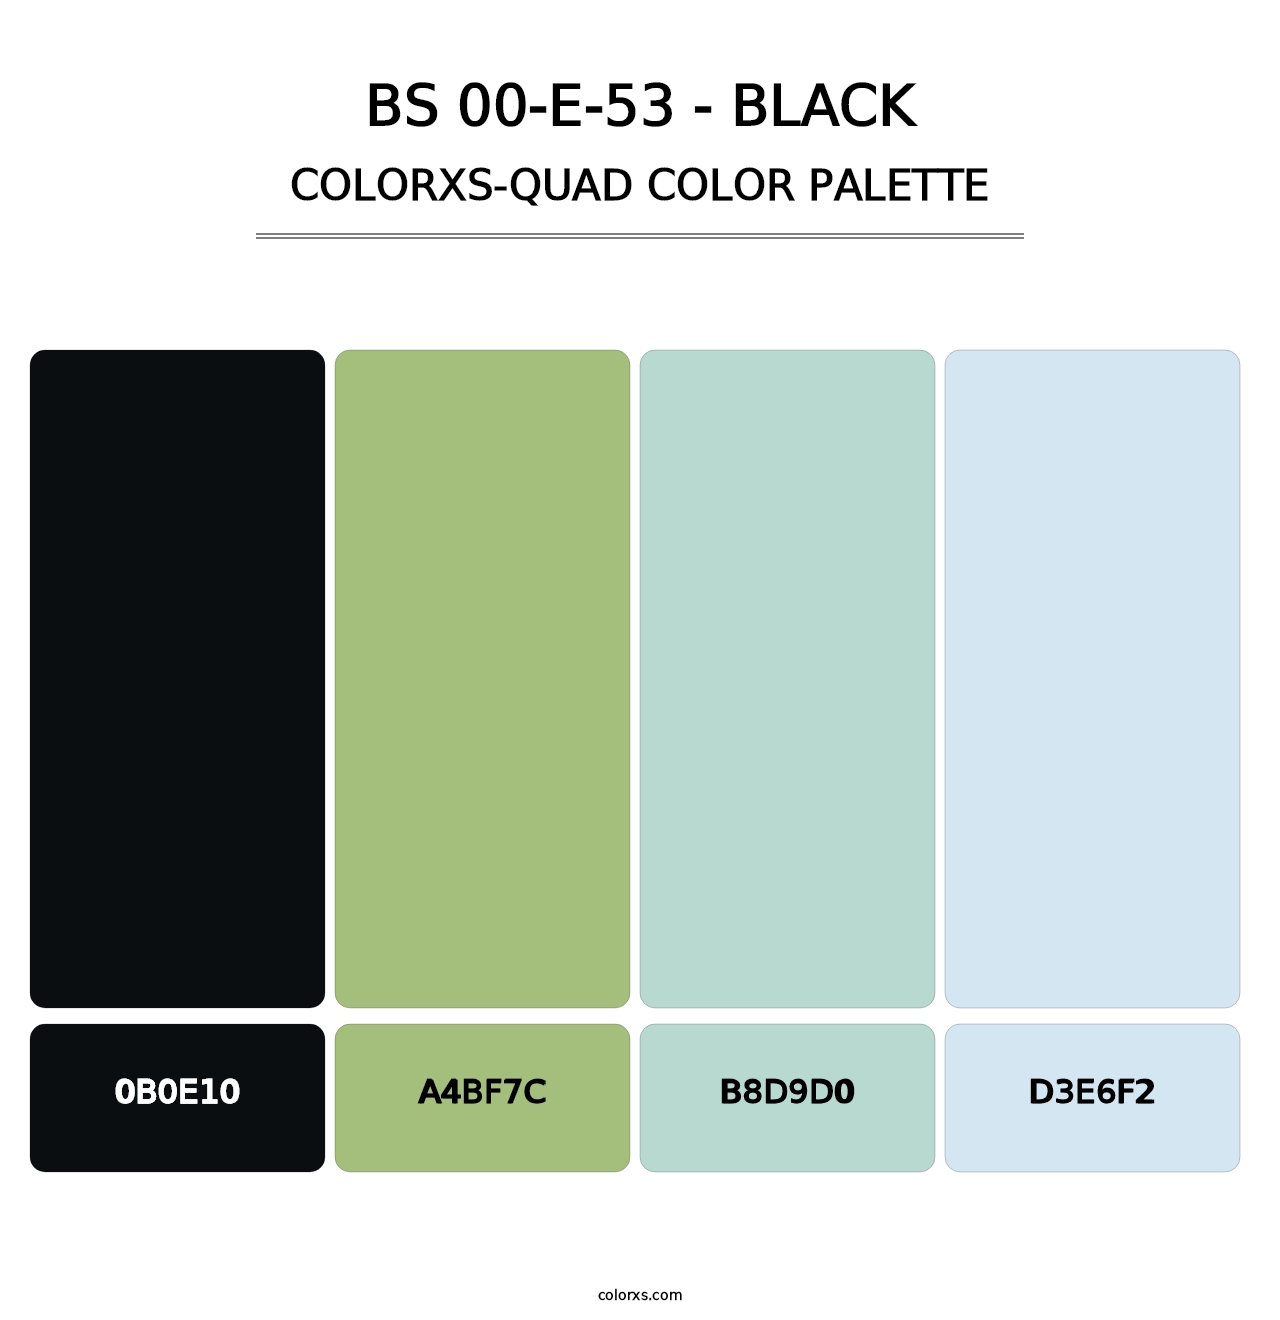 BS 00-E-53 - Black - Colorxs Quad Palette